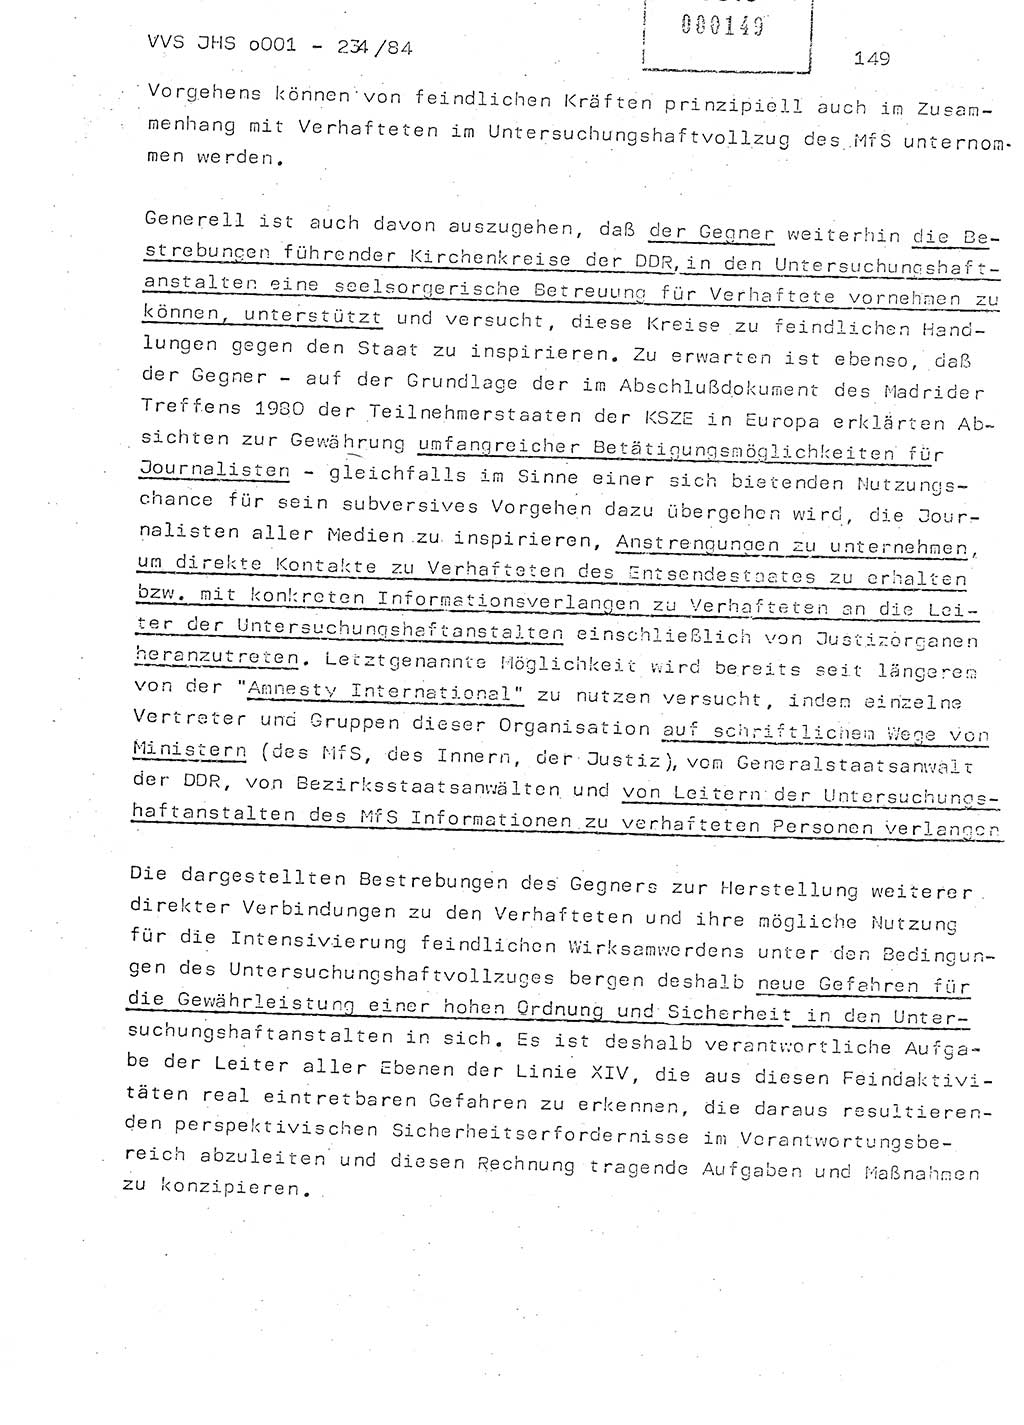 Dissertation Oberst Siegfried Rataizick (Abt. ⅩⅣ), Oberstleutnant Volkmar Heinz (Abt. ⅩⅣ), Oberstleutnant Werner Stein (HA Ⅸ), Hauptmann Heinz Conrad (JHS), Ministerium für Staatssicherheit (MfS) [Deutsche Demokratische Republik (DDR)], Juristische Hochschule (JHS), Vertrauliche Verschlußsache (VVS) o001-234/84, Potsdam 1984, Seite 149 (Diss. MfS DDR JHS VVS o001-234/84 1984, S. 149)